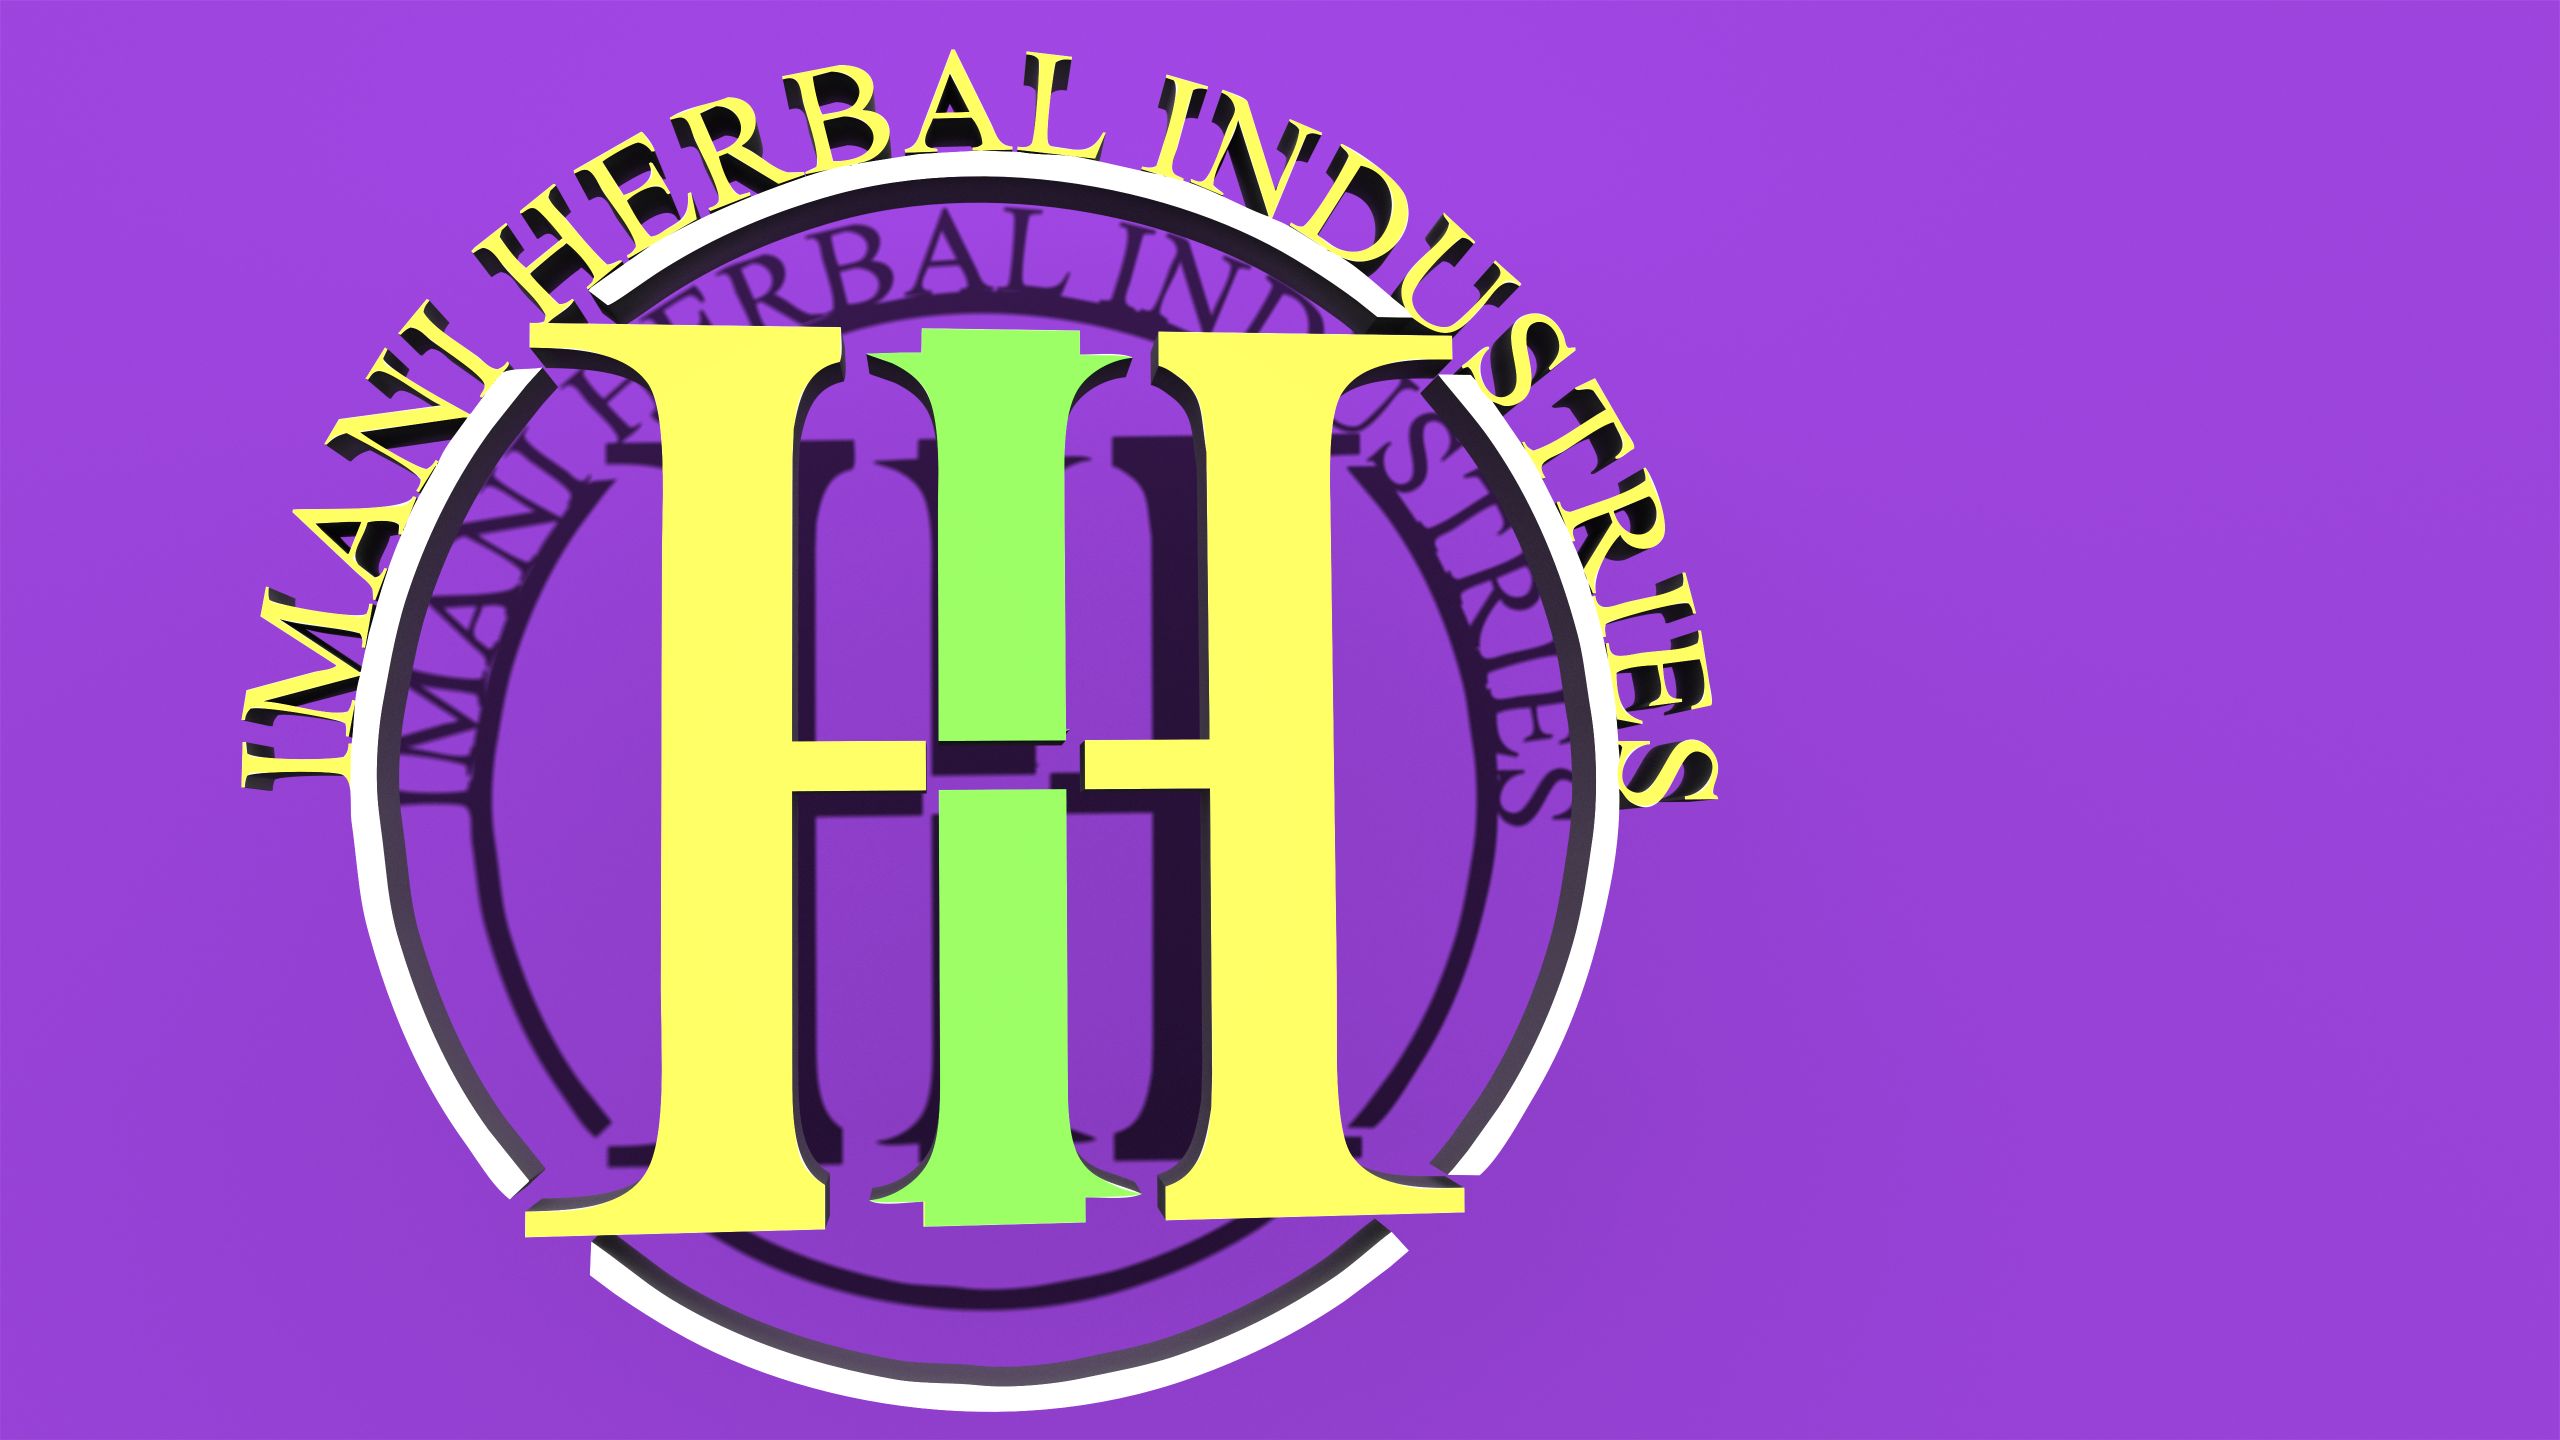 Imani Herbal Industries